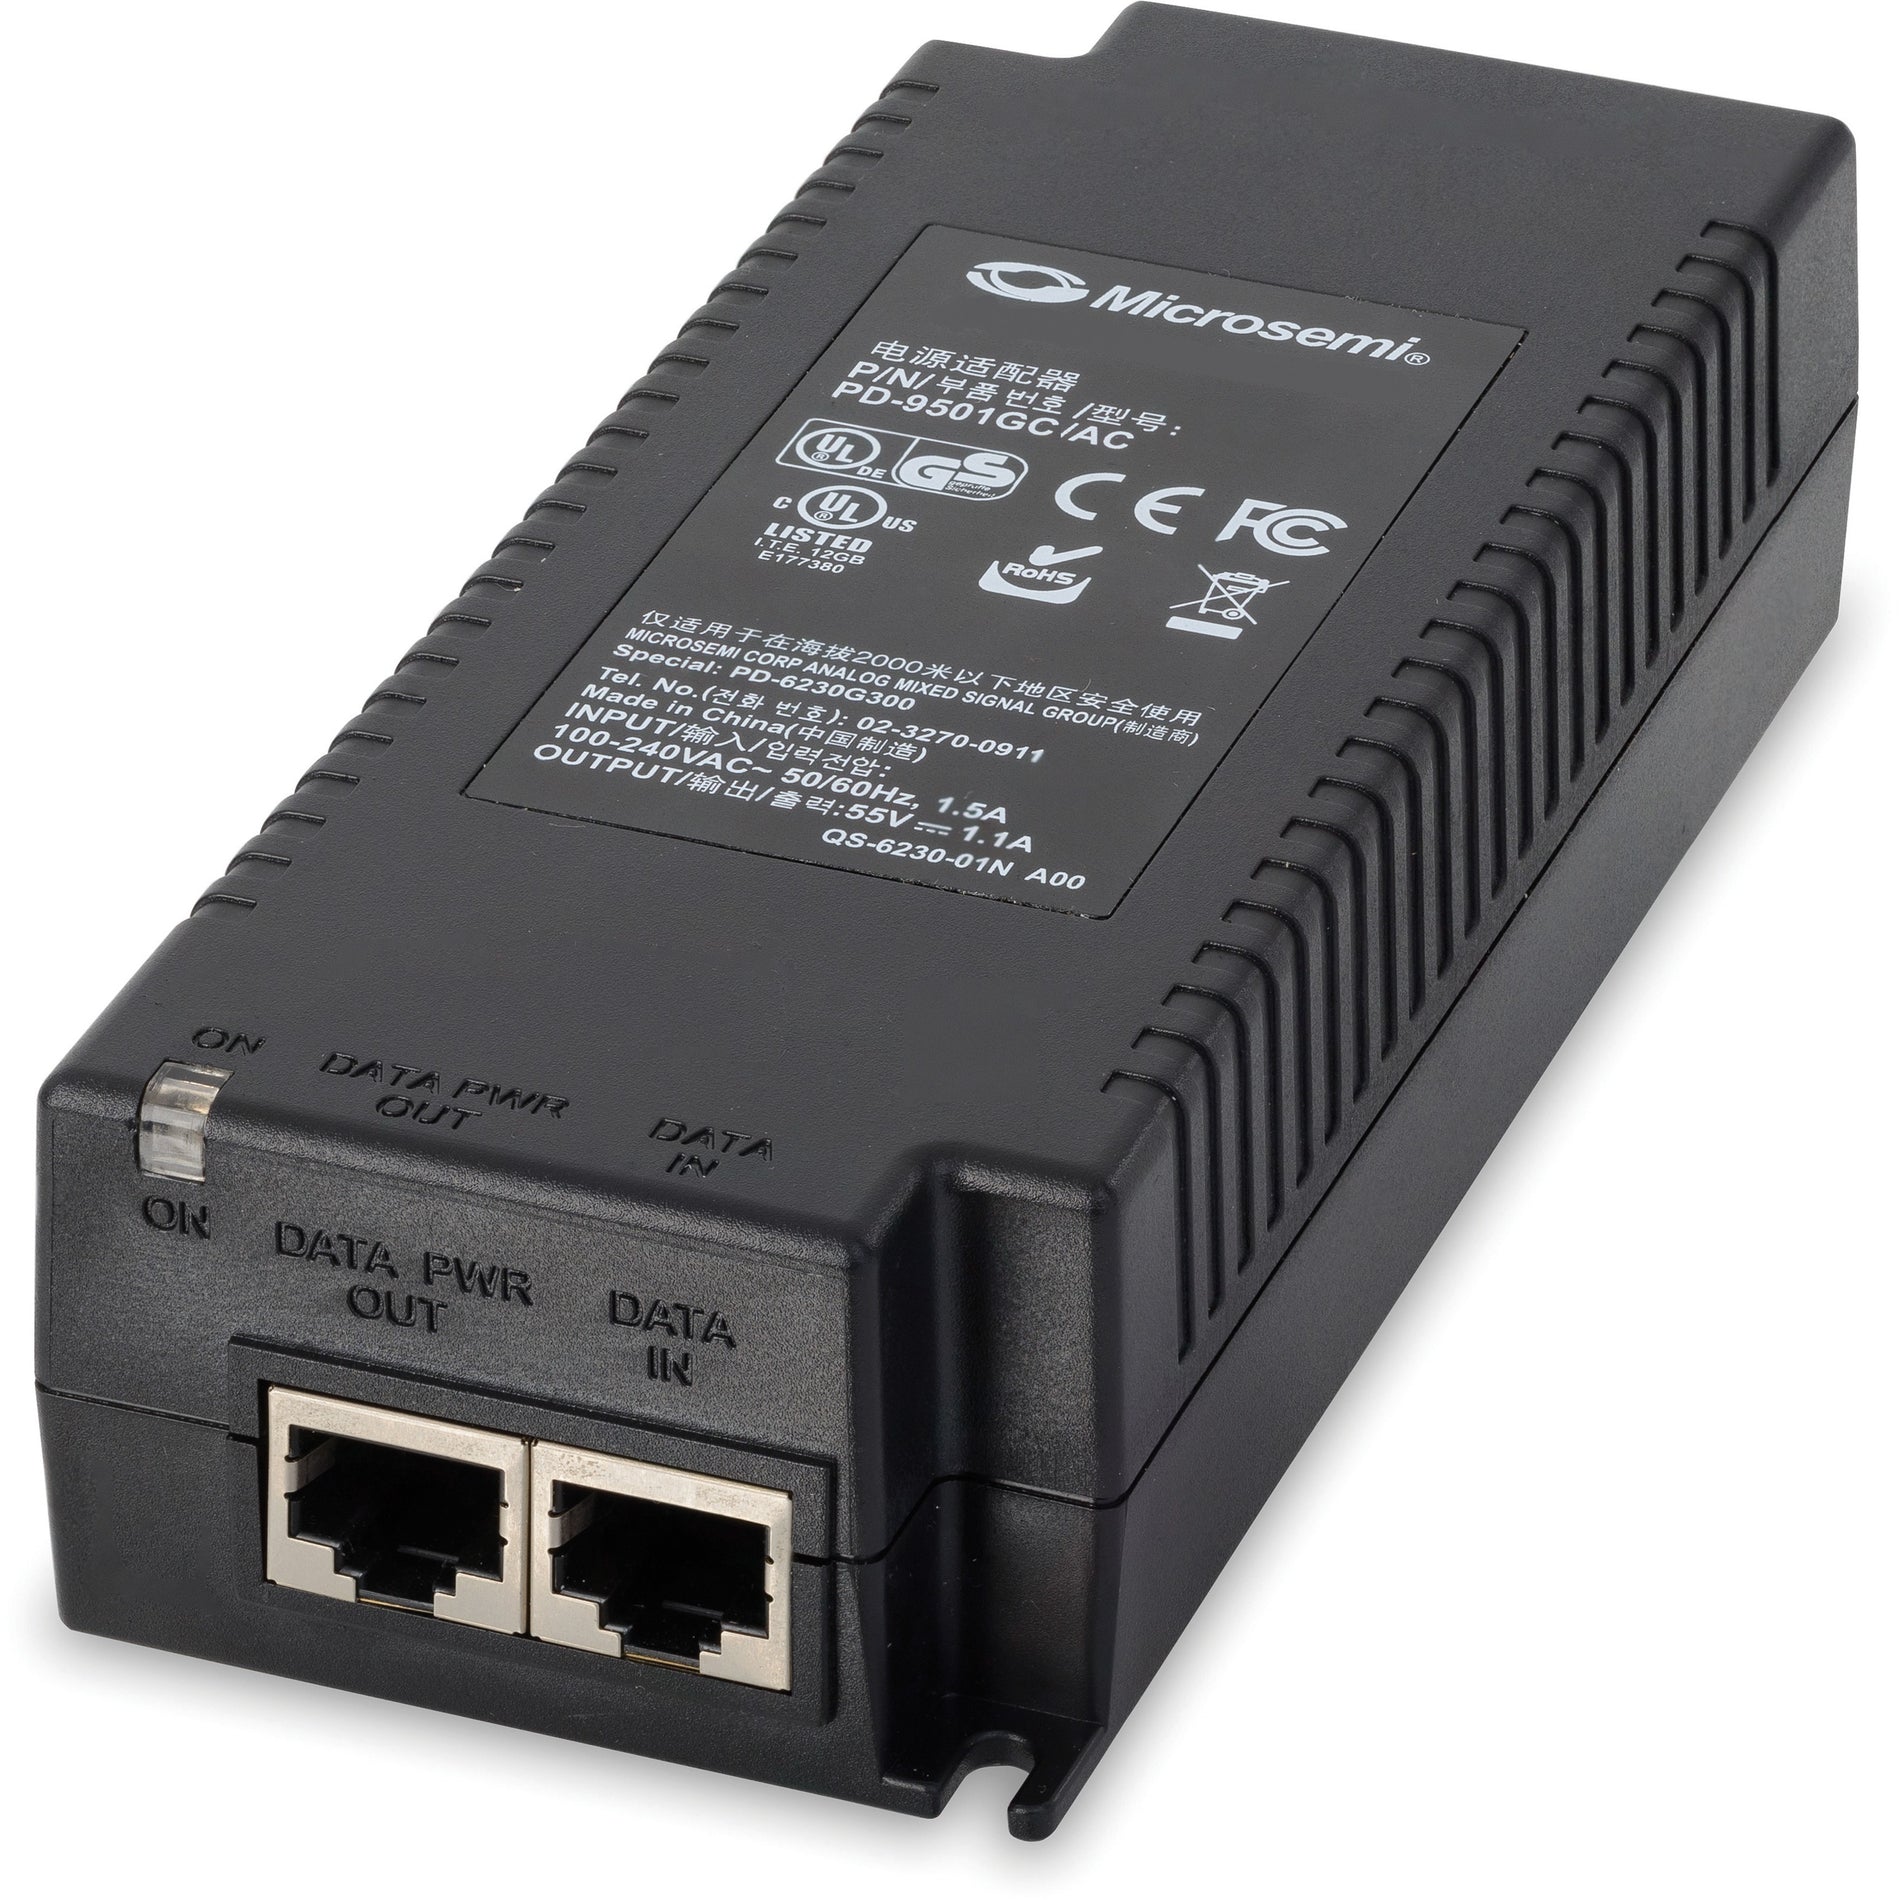 Microchip PD-9501GC/AC-US 1-Port, IEEE 802.3bt 60W PoE Midspan Power Injector/Splitter